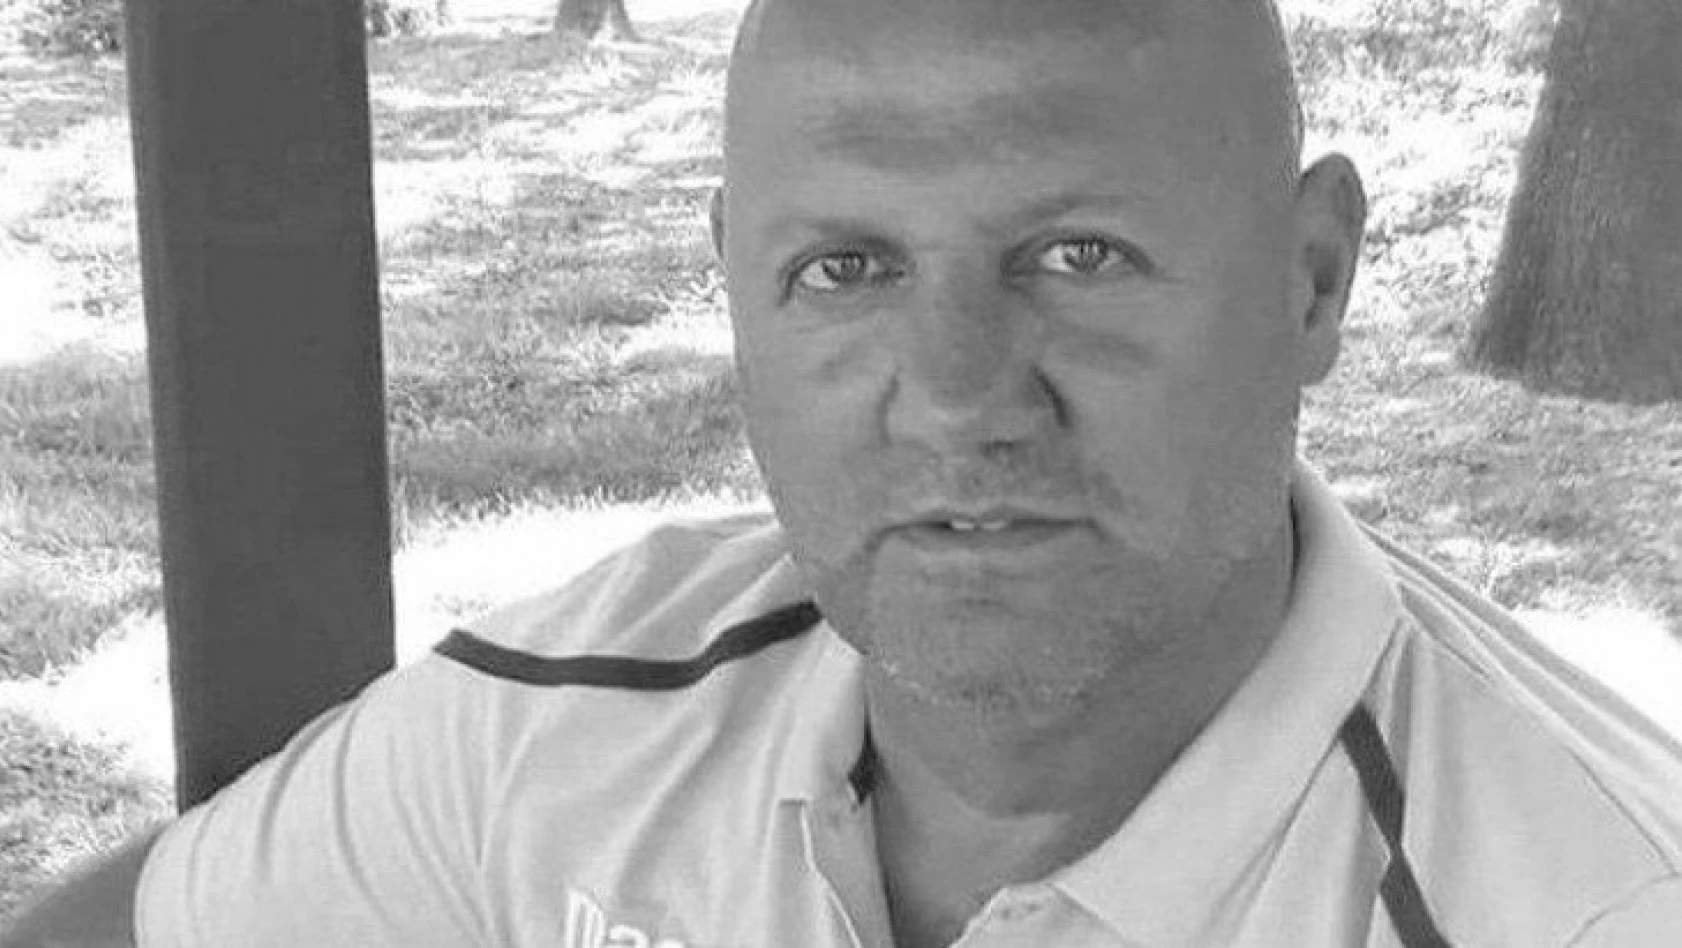 Antrenör Can Cüneyt Ömeroğlu, koronavirüs nedeniyle hayatını kaybetti